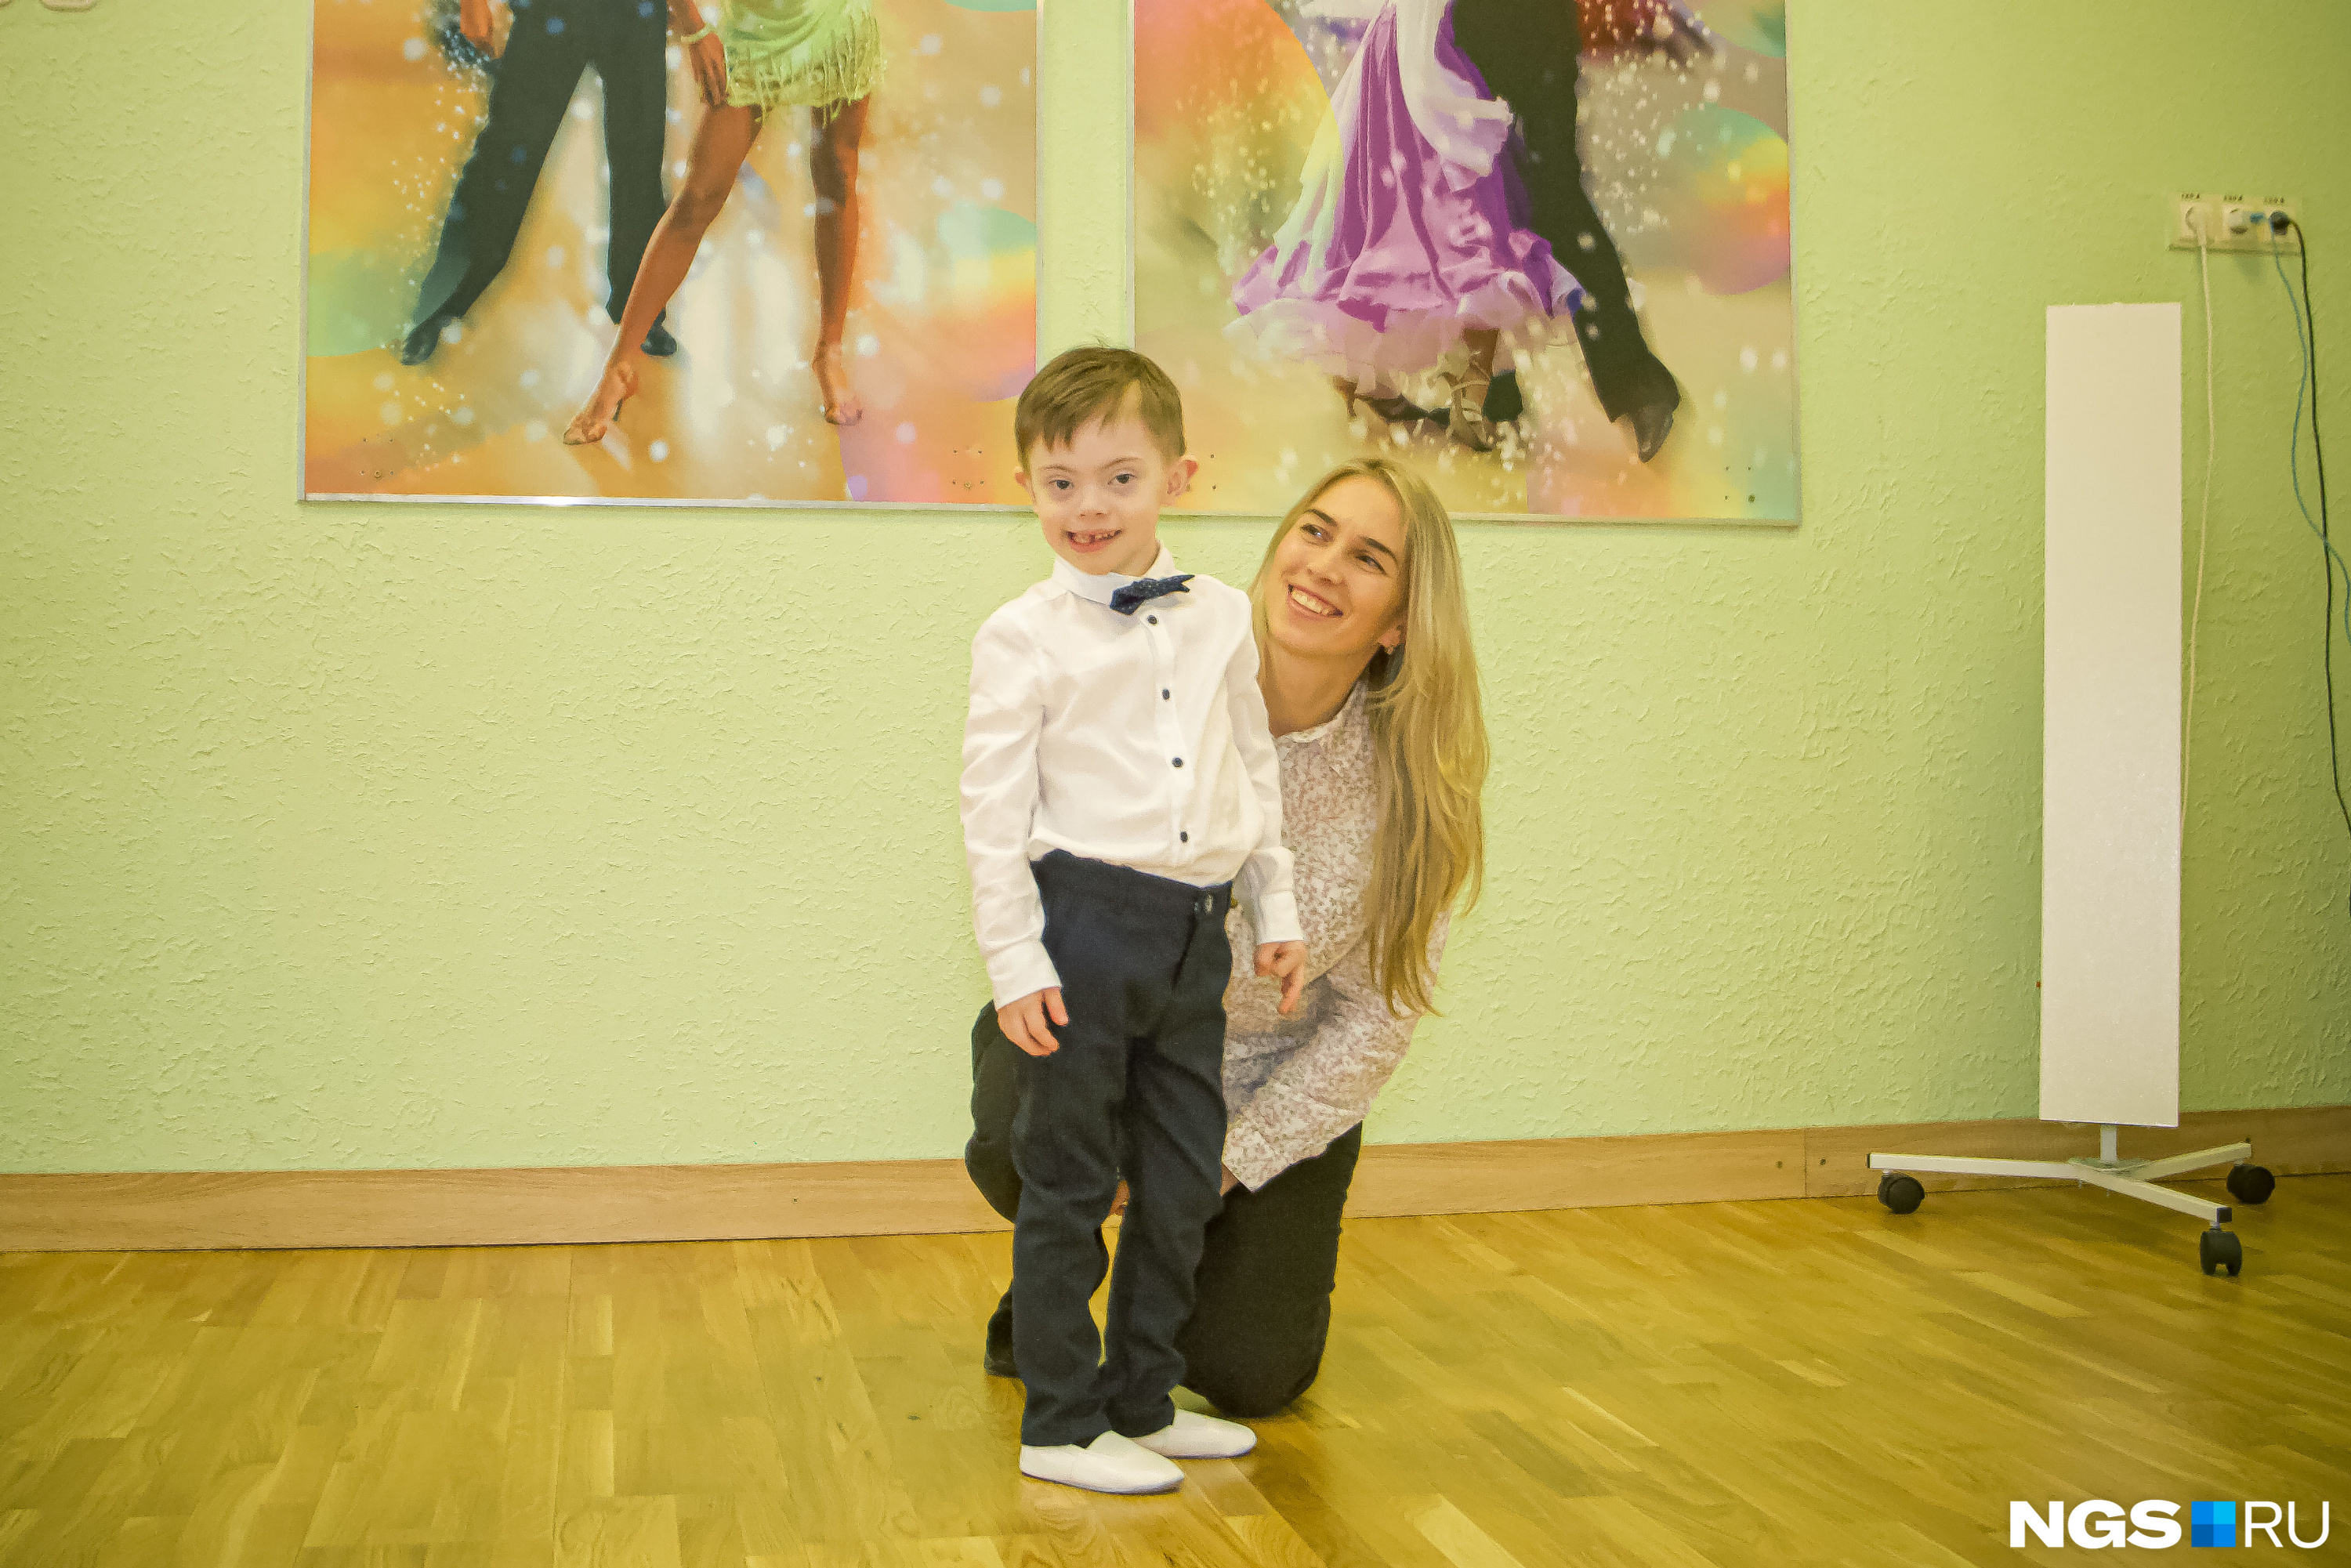 Олеся говорит, что танцы помогают ее сыну научиться лучше управлять своим телом